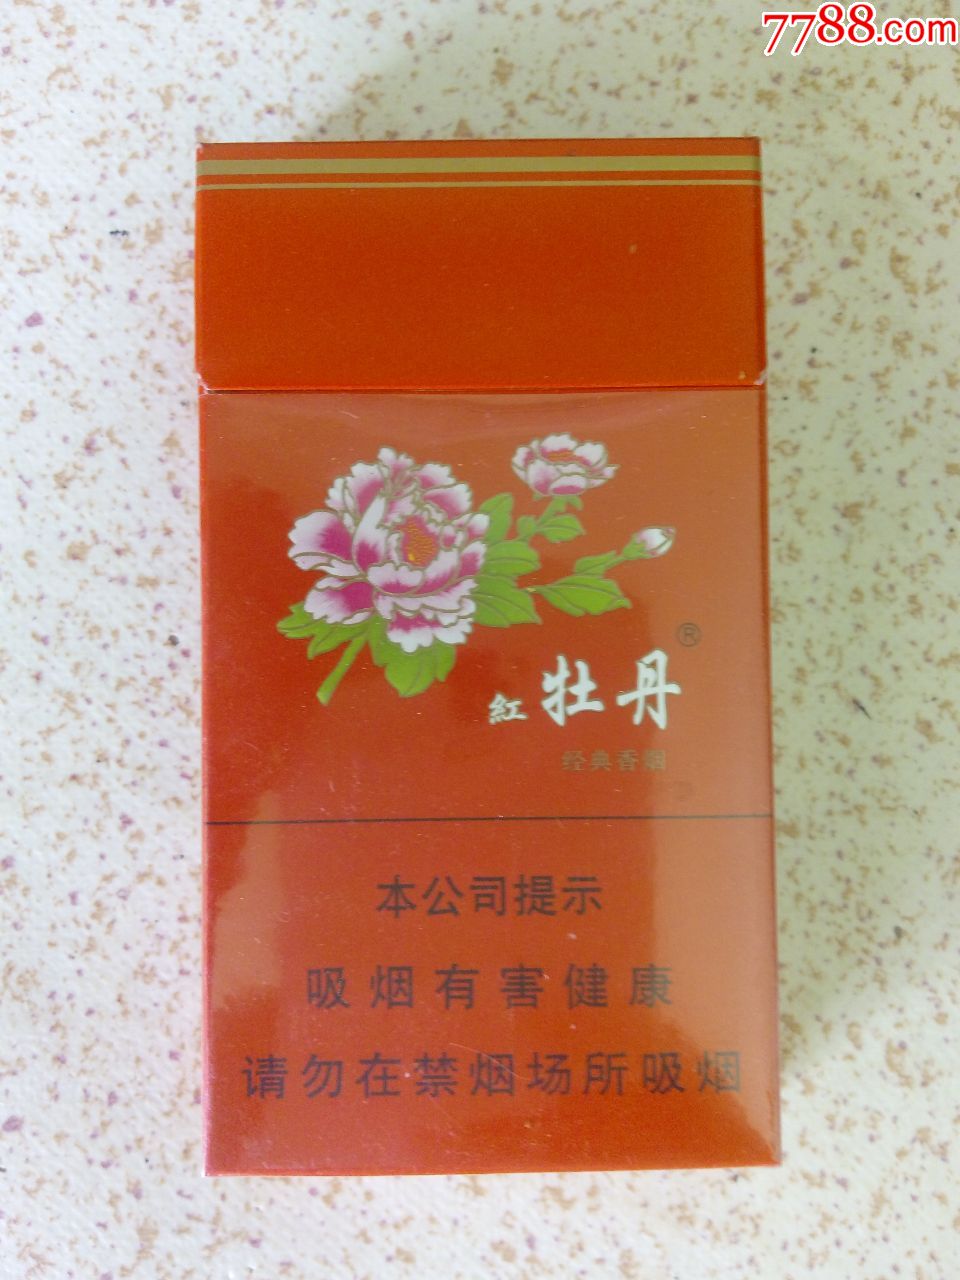 红牡丹3d烟标_烟标/烟盒_杂品苑【7788收藏__收藏热线